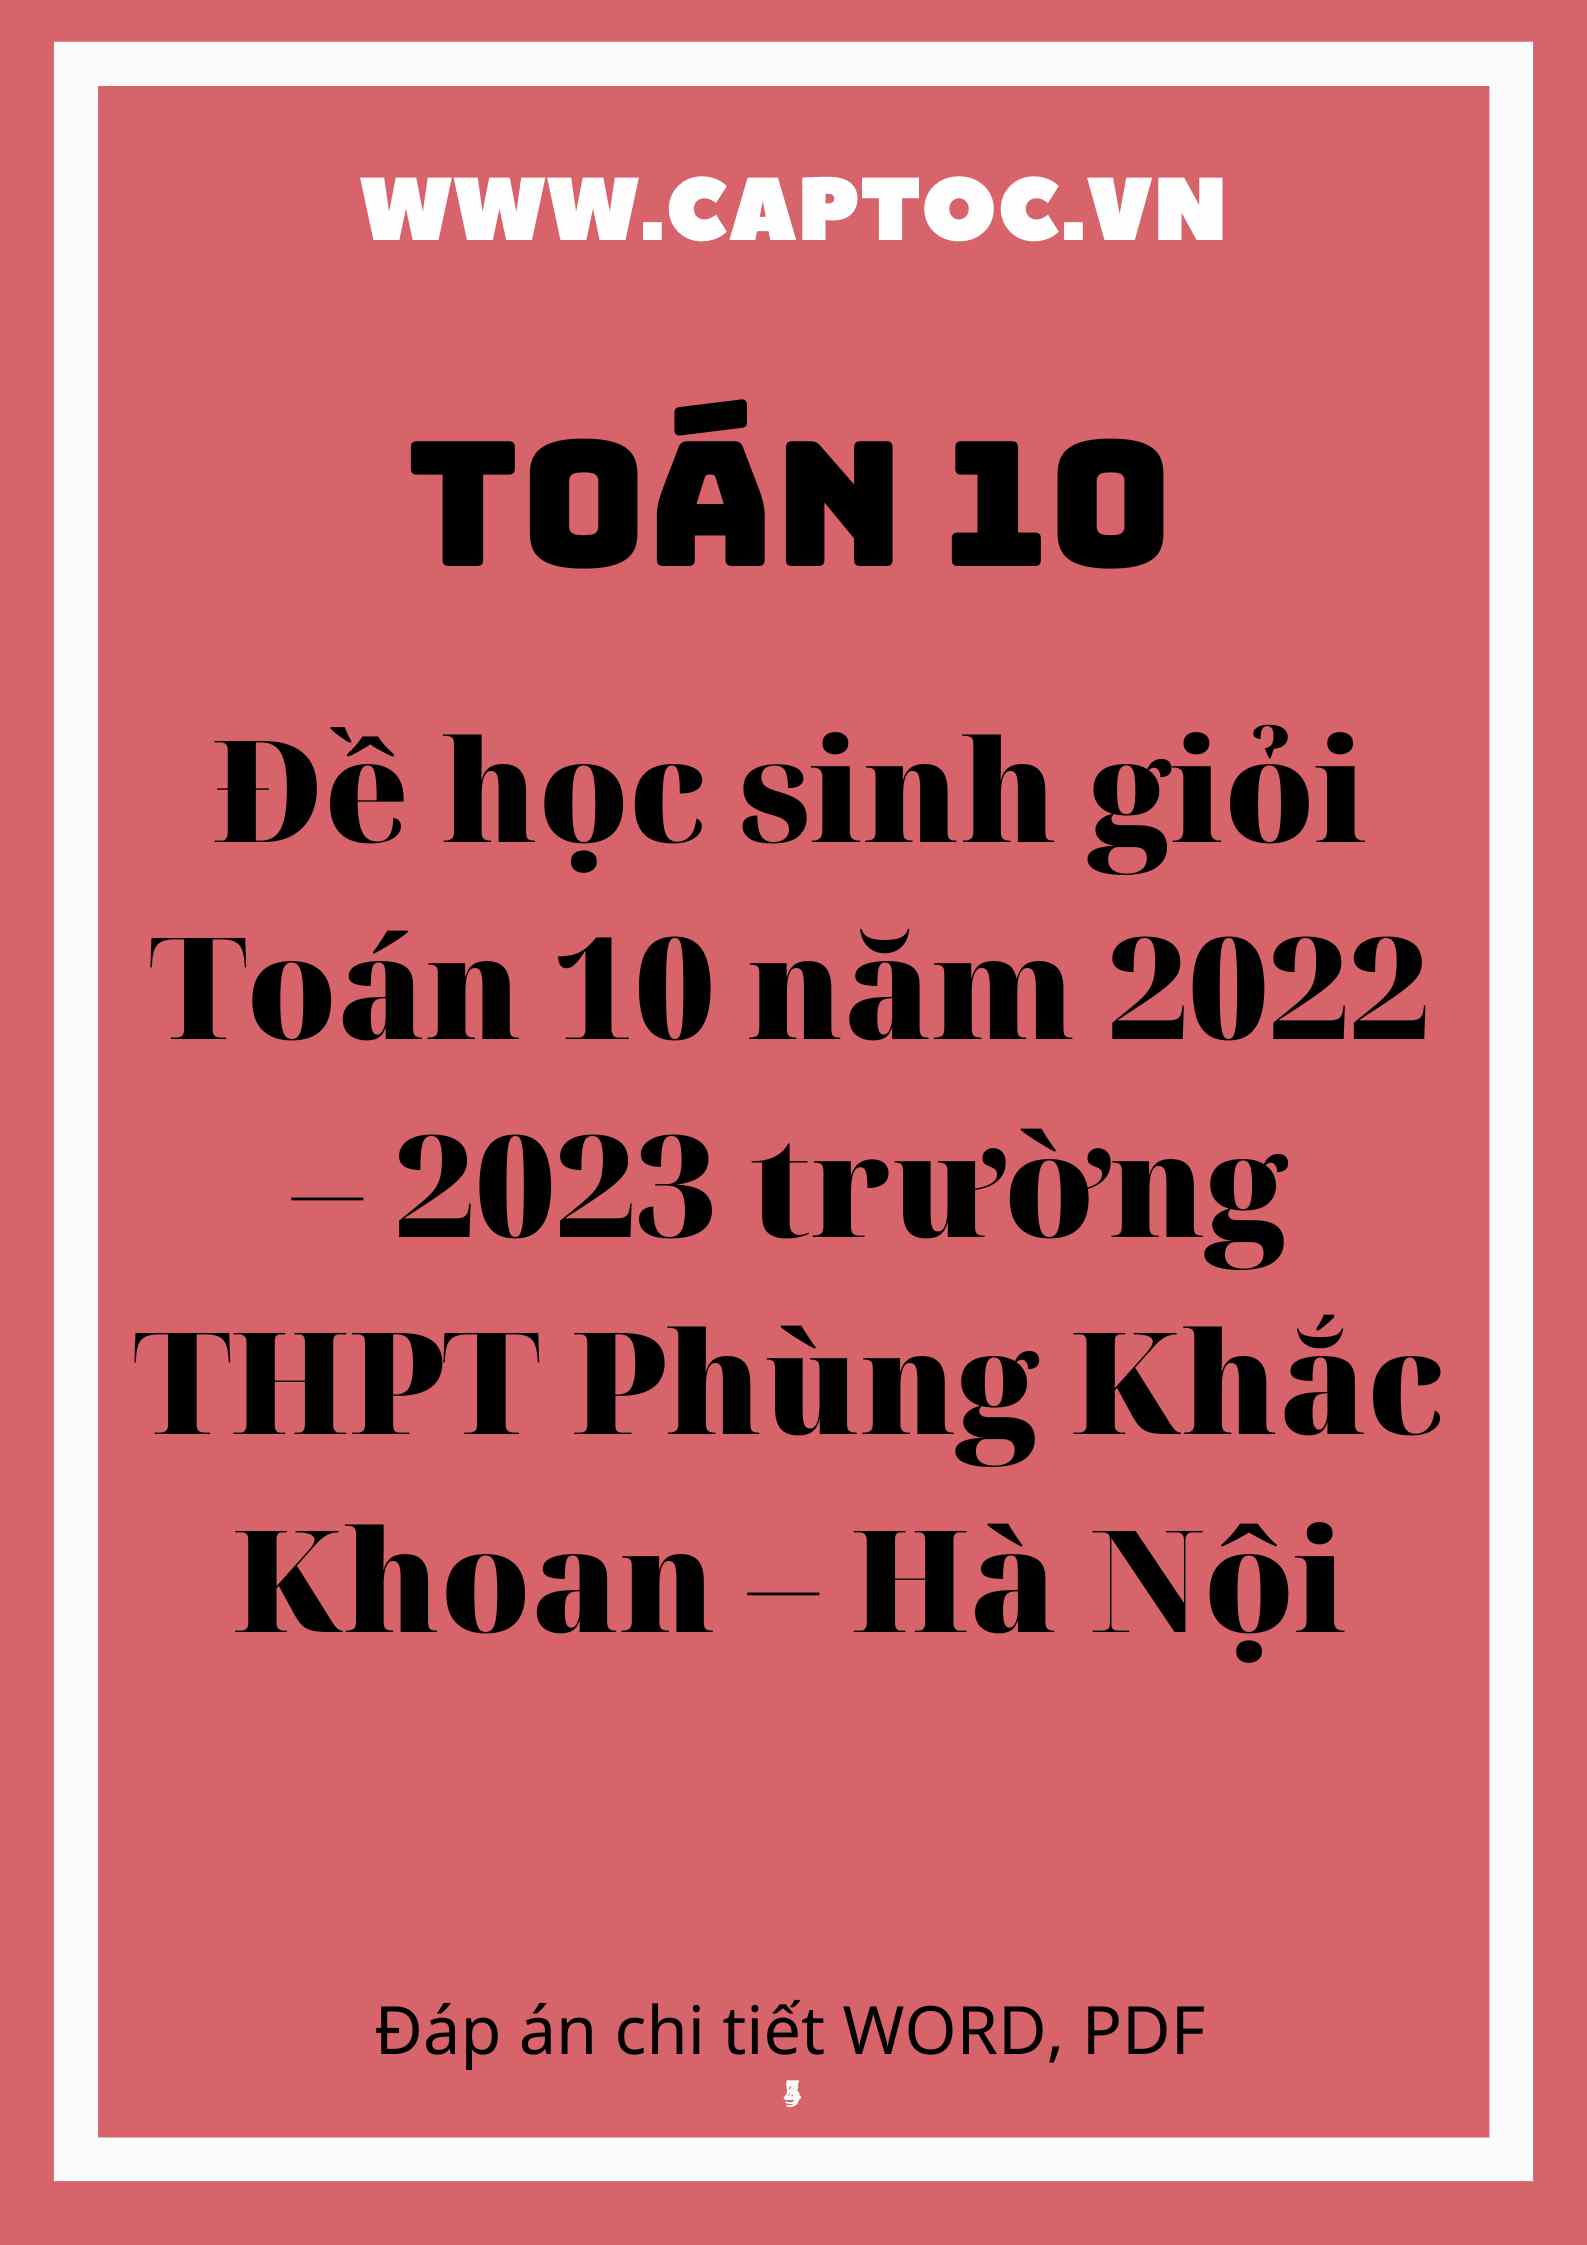 Đề học sinh giỏi Toán 10 năm 2022 – 2023 trường THPT Phùng Khắc Khoan – Hà Nội